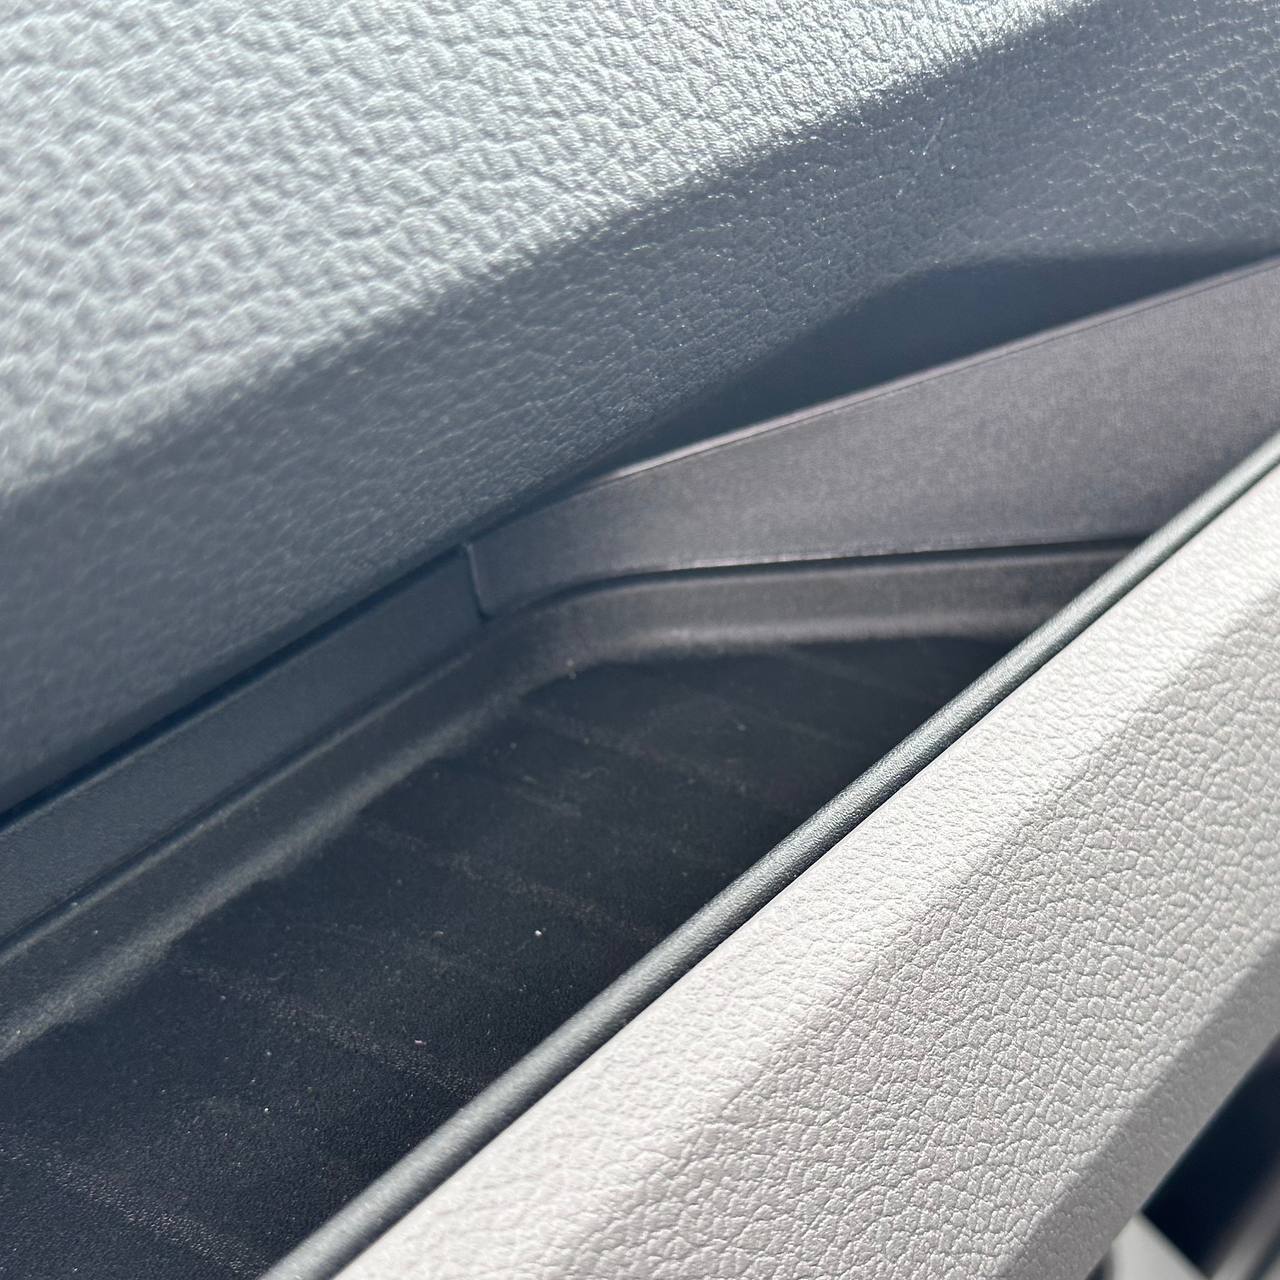 Inserciones de goma para el panel inferior del salpicadero para Volkswagen Crafter / MAN TGE, furgoneta o camper